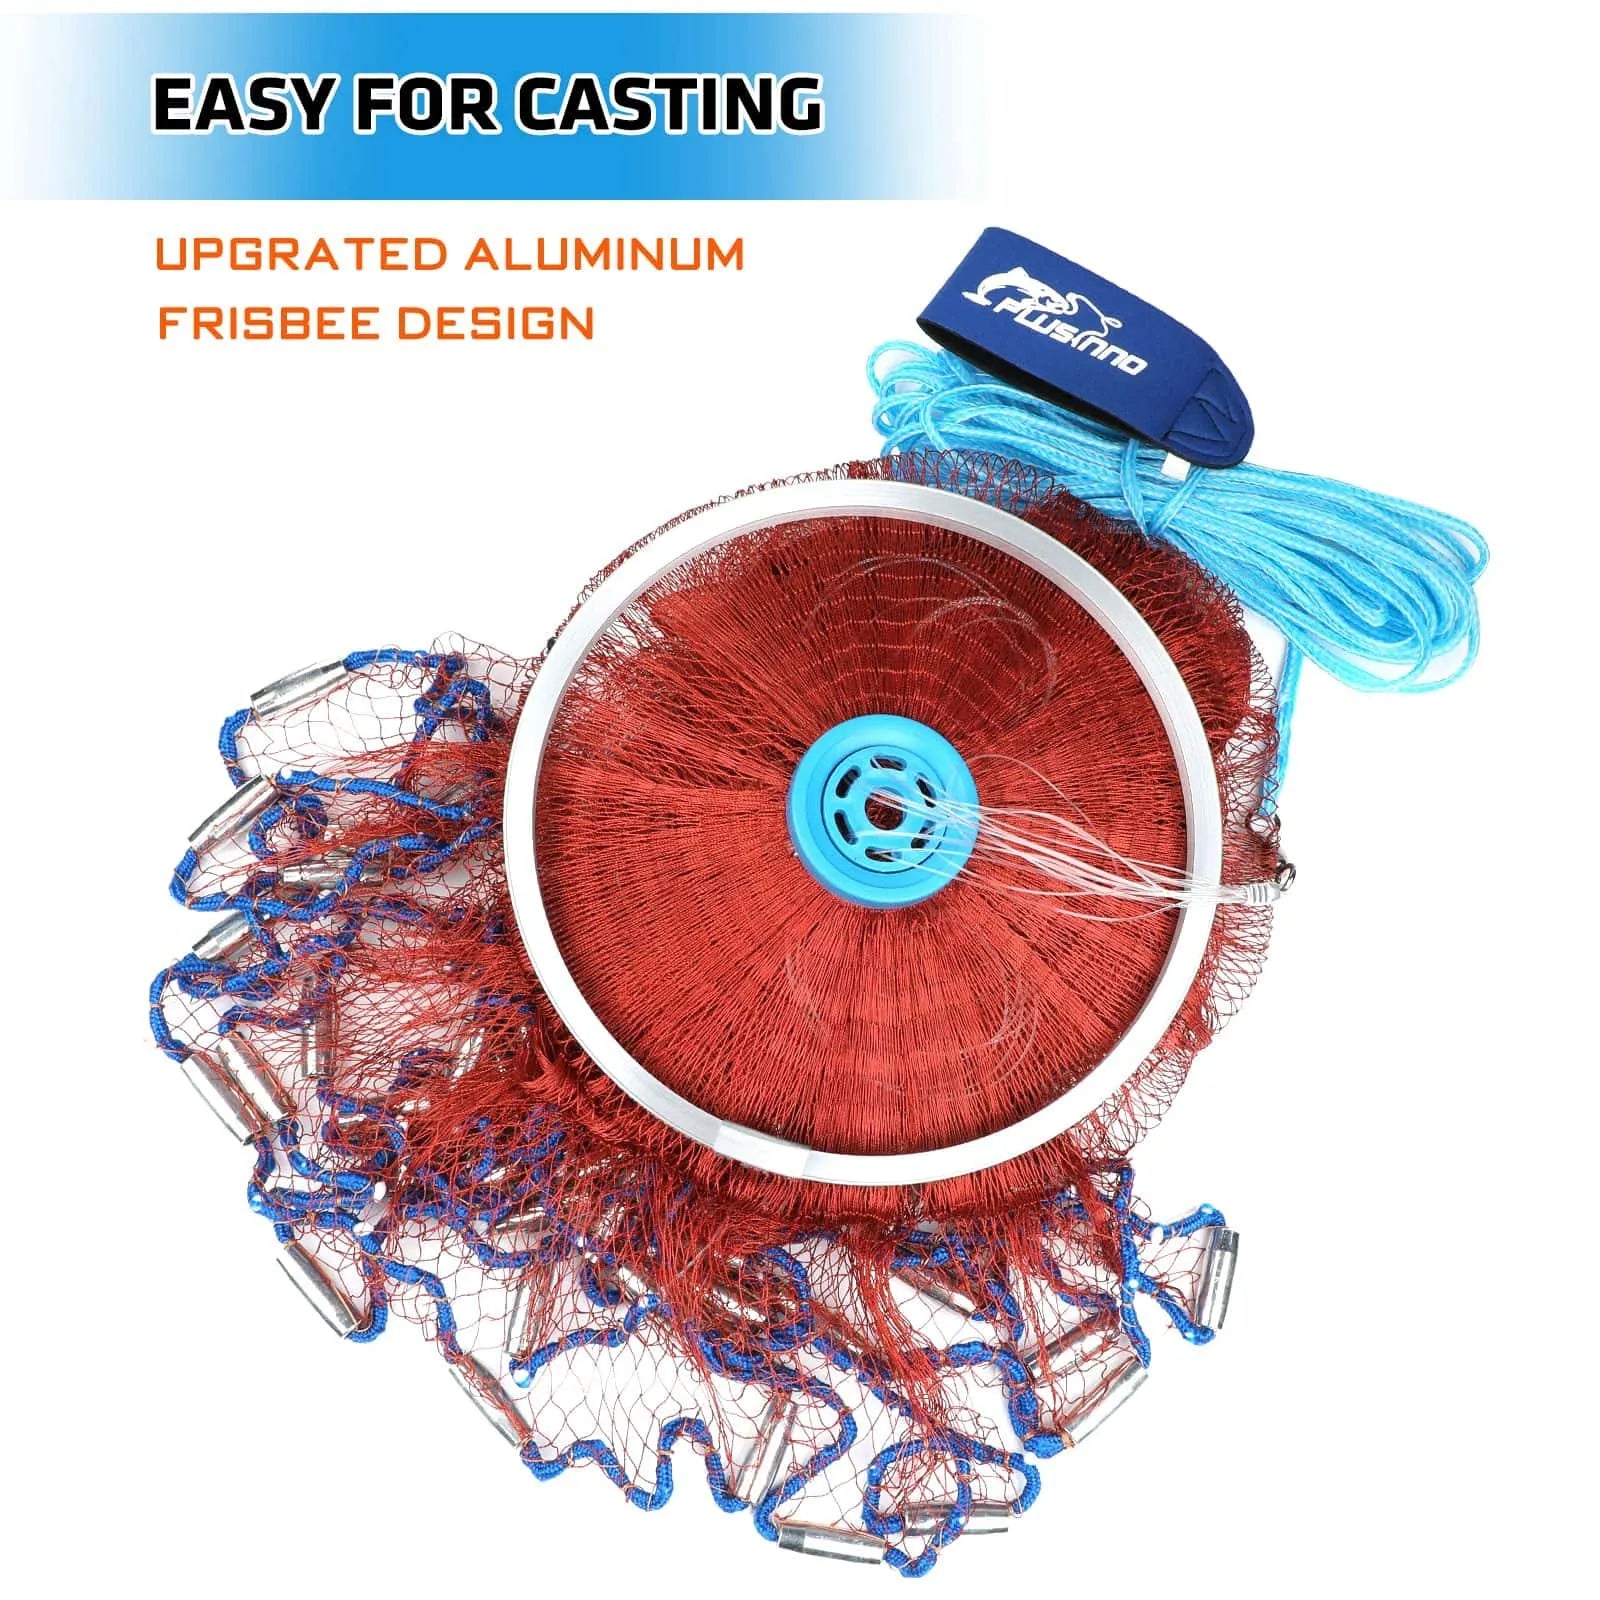 PLUSINNO Cast Net with Aluminum Frisbee – Plusinno